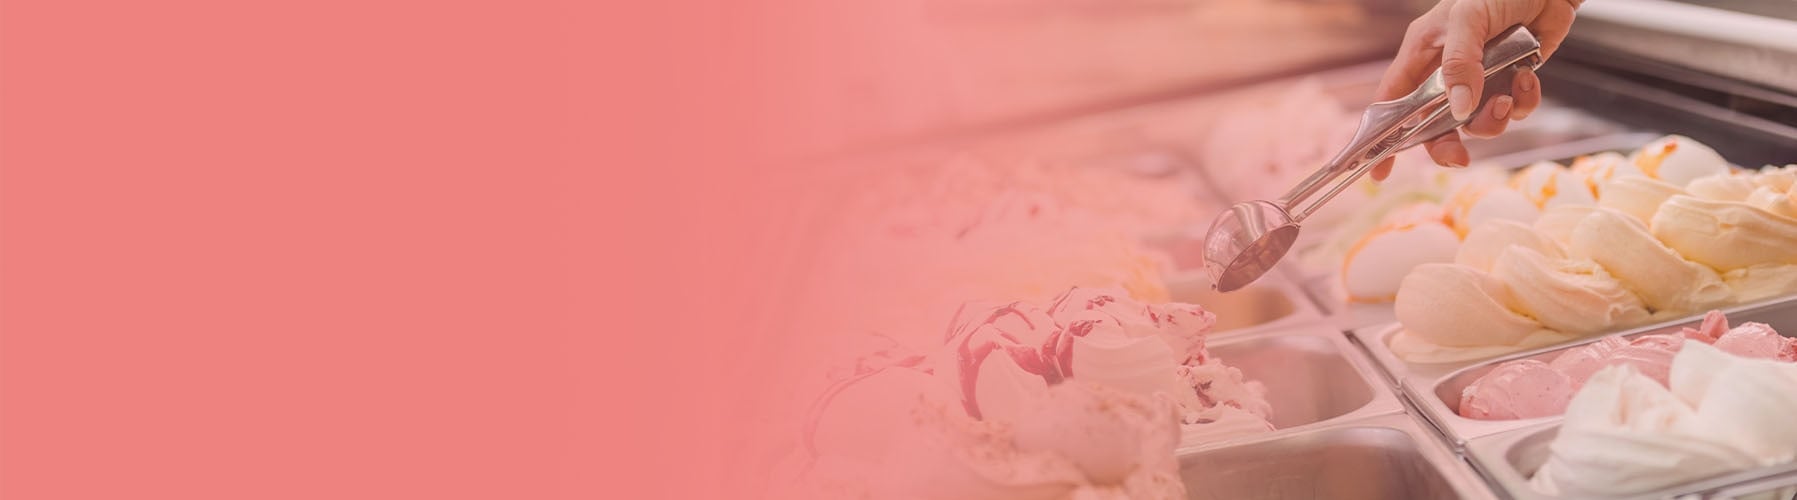 How To Start Your Own Ice Cream Shop - Frozen Dessert Supplies